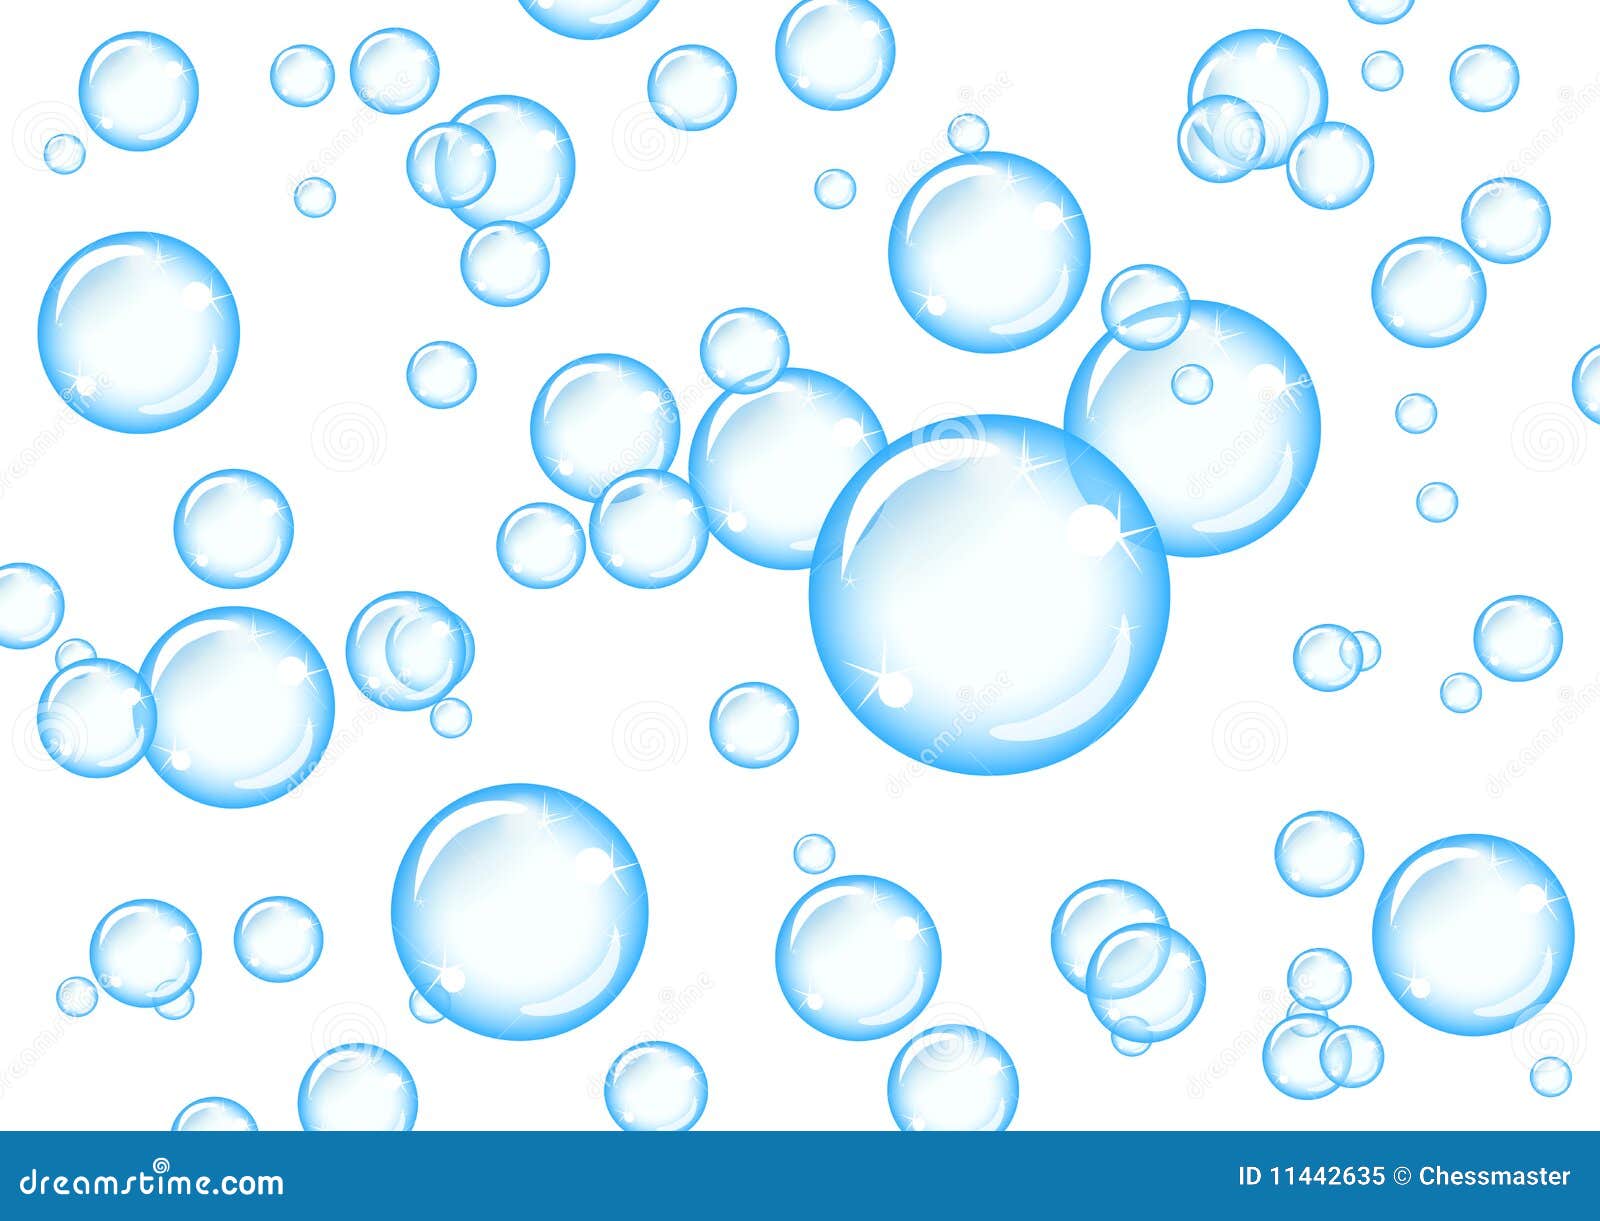 clipart bubbles background - photo #15